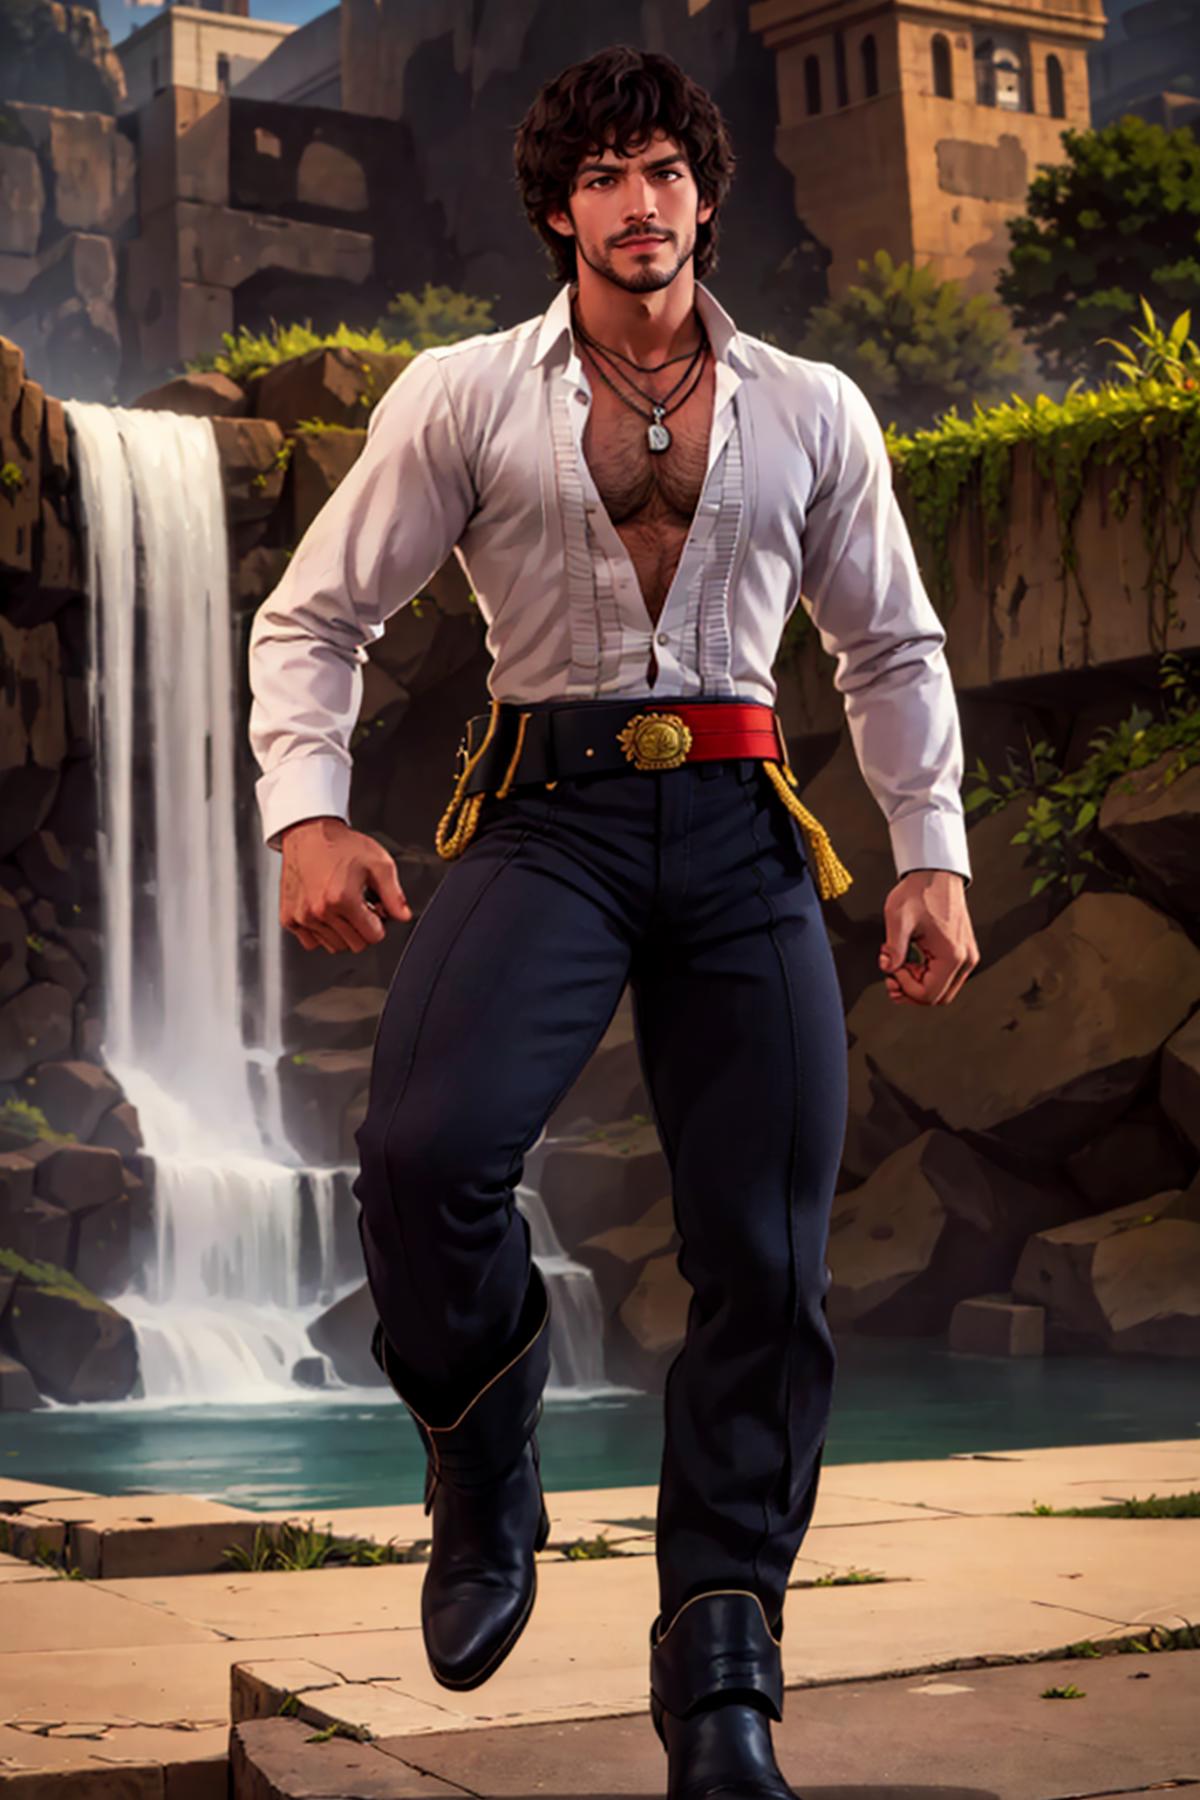 Miguel Caballero [Tekken] image by DoctorStasis